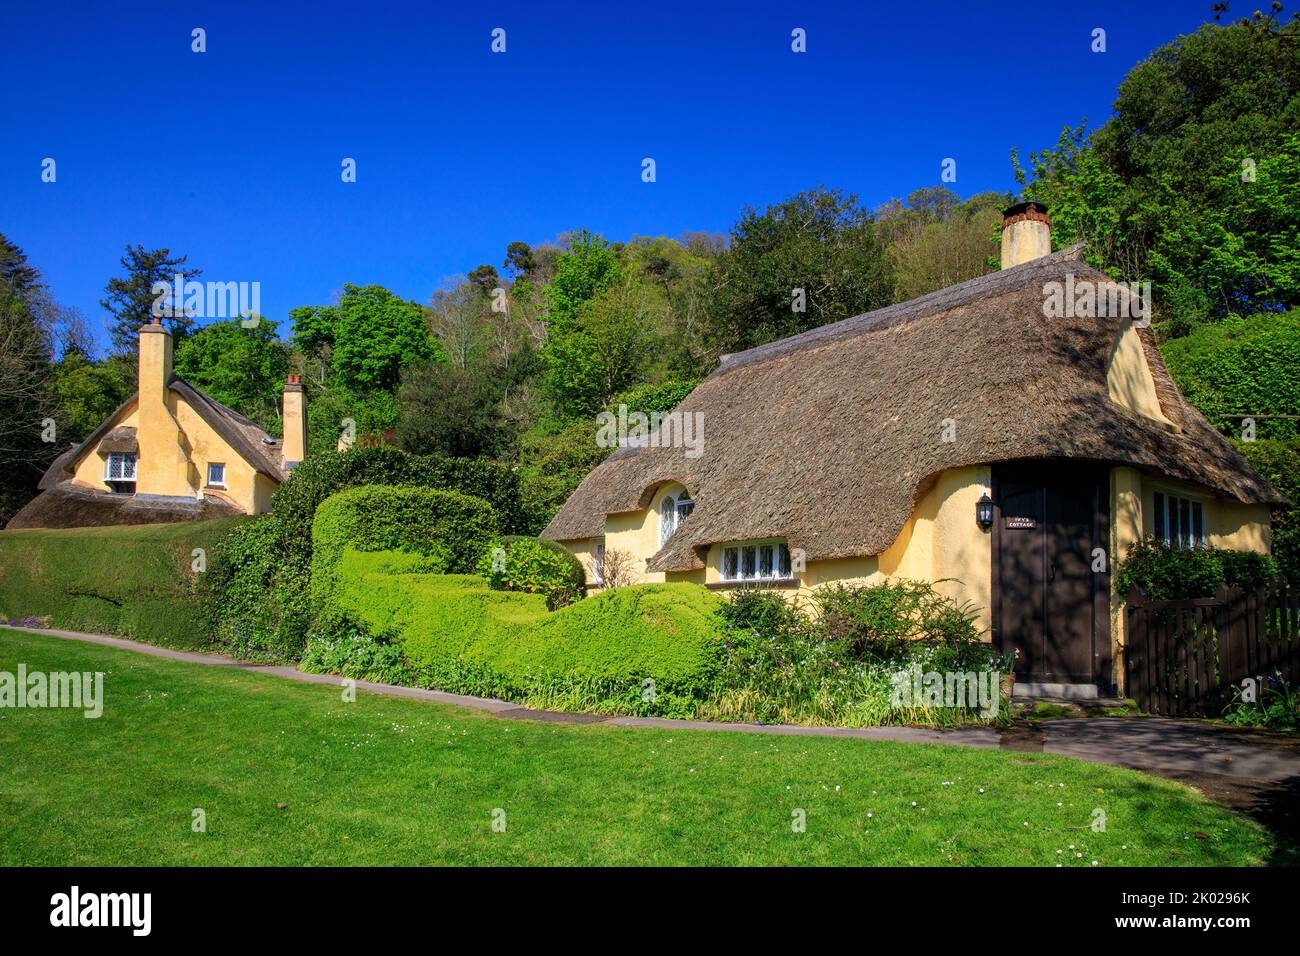 Ivy's Cottage est un charmant cottage de chaume à Selworthy Green sur le domaine Holnicote, Somerset, Angleterre, Royaume-Uni Banque D'Images